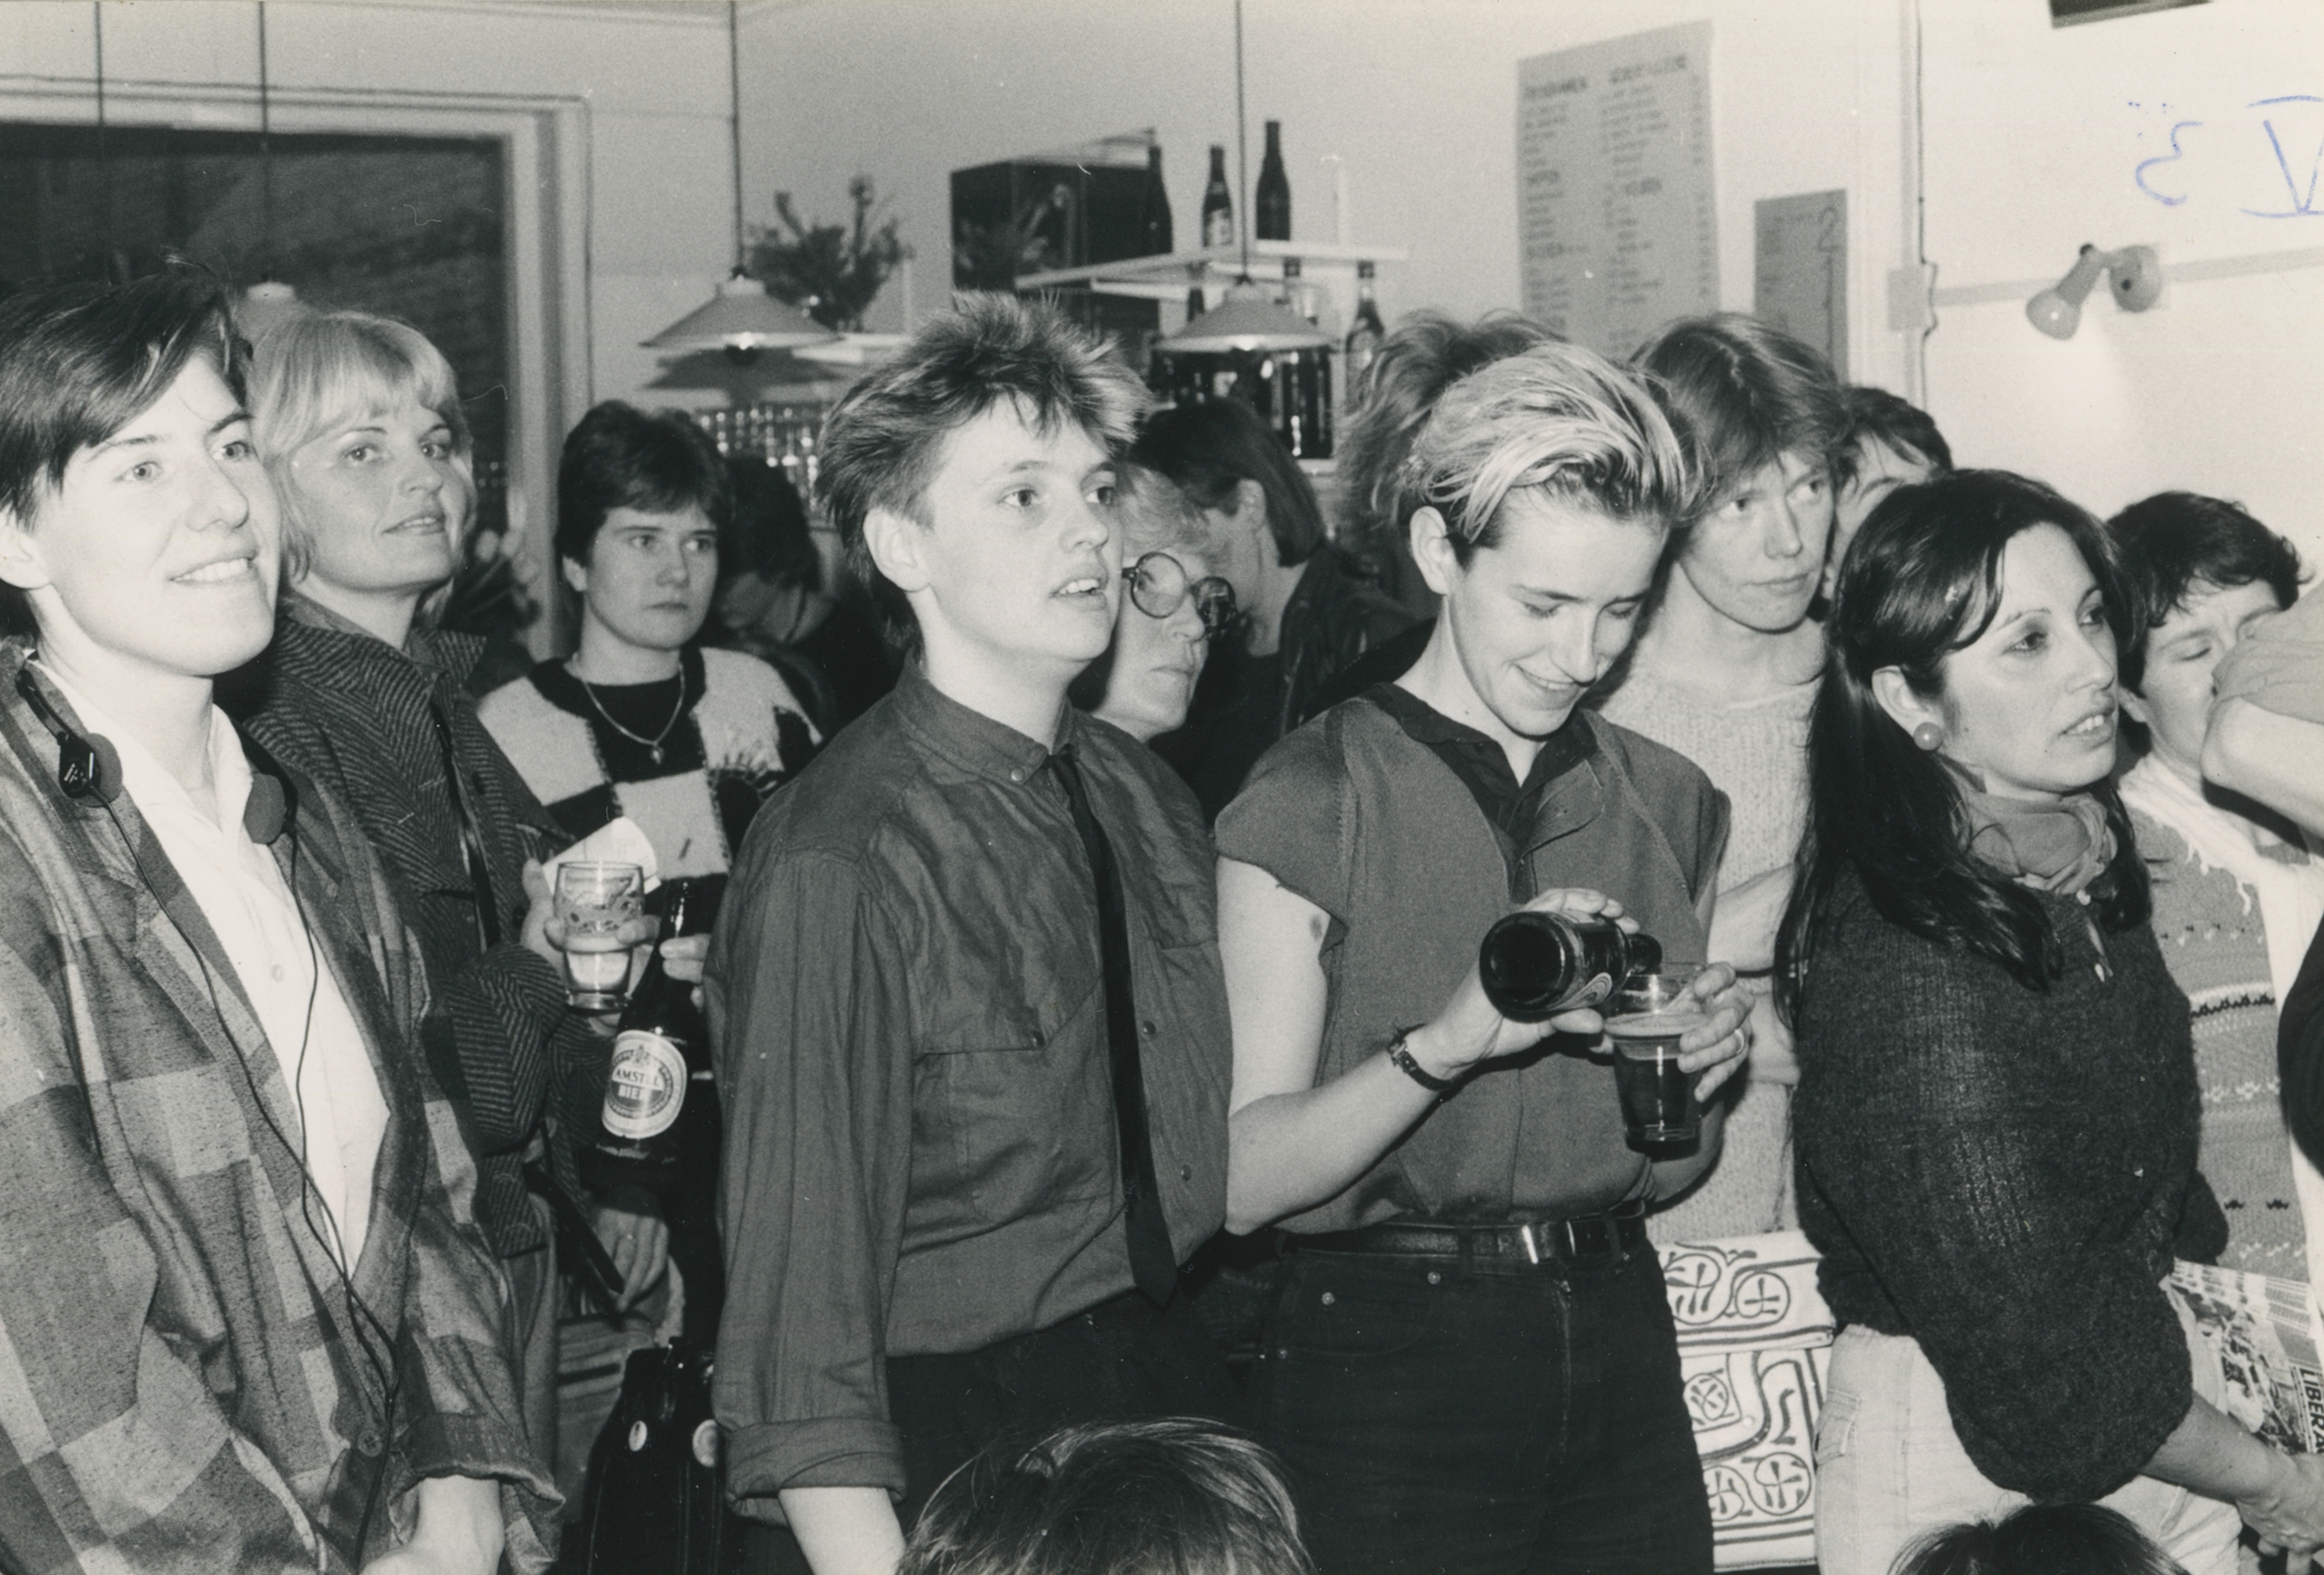 Bijeenkomst bij Vrouwencentrum Tilburg, later Feniks, in waarschijnlijk de jaren tachtig. Fotograaf: Feniks / Vrouwencentrum, collectie Regionaal Archief Tilburg.